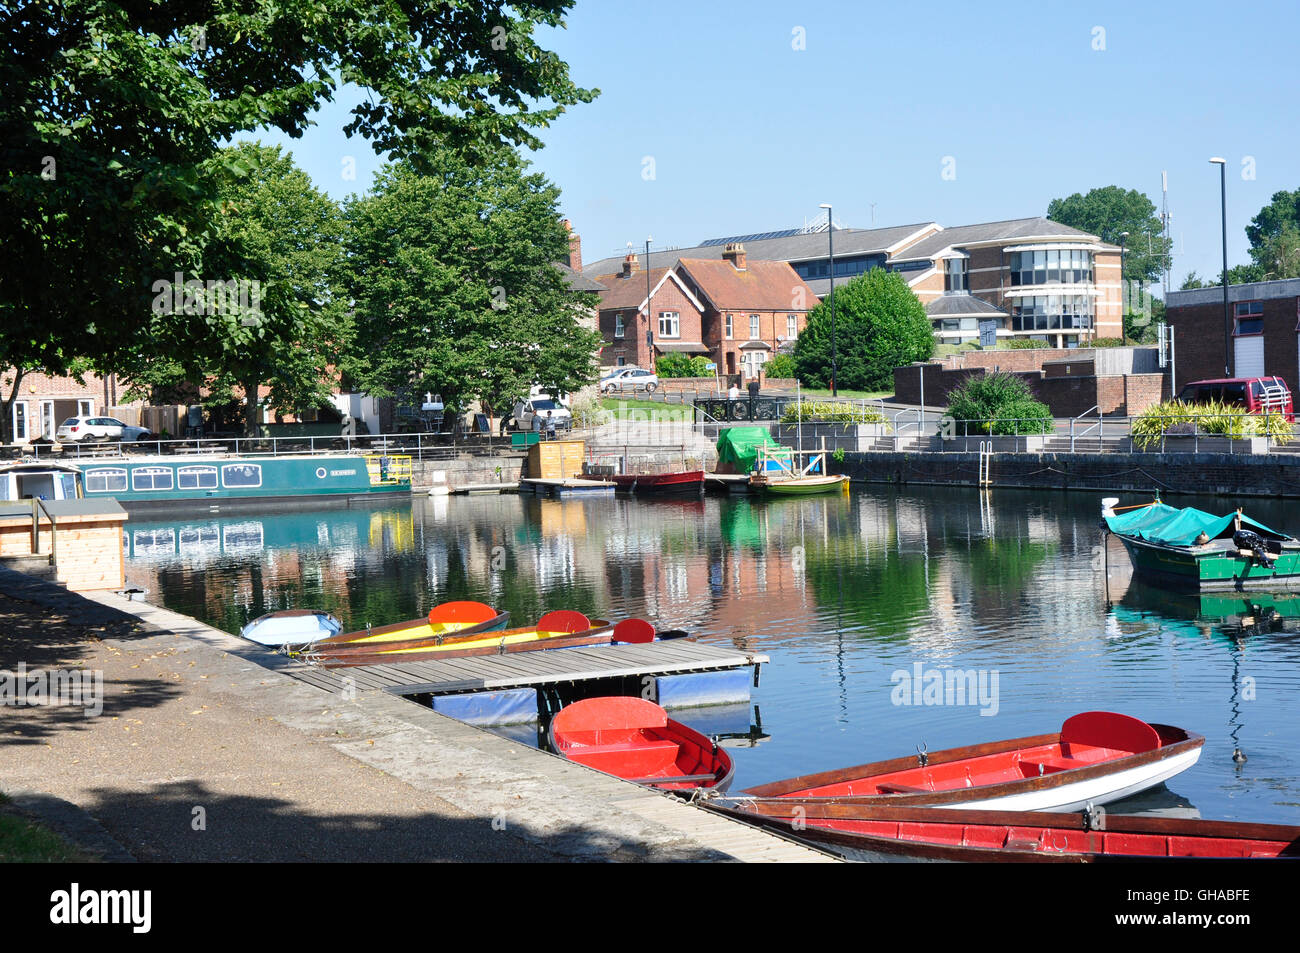 Hampshire - Chichester bassin du canal - des bateaux de plaisance amarrés - lumière du soleil et les ombres - réflexions-ville skyline toile Banque D'Images